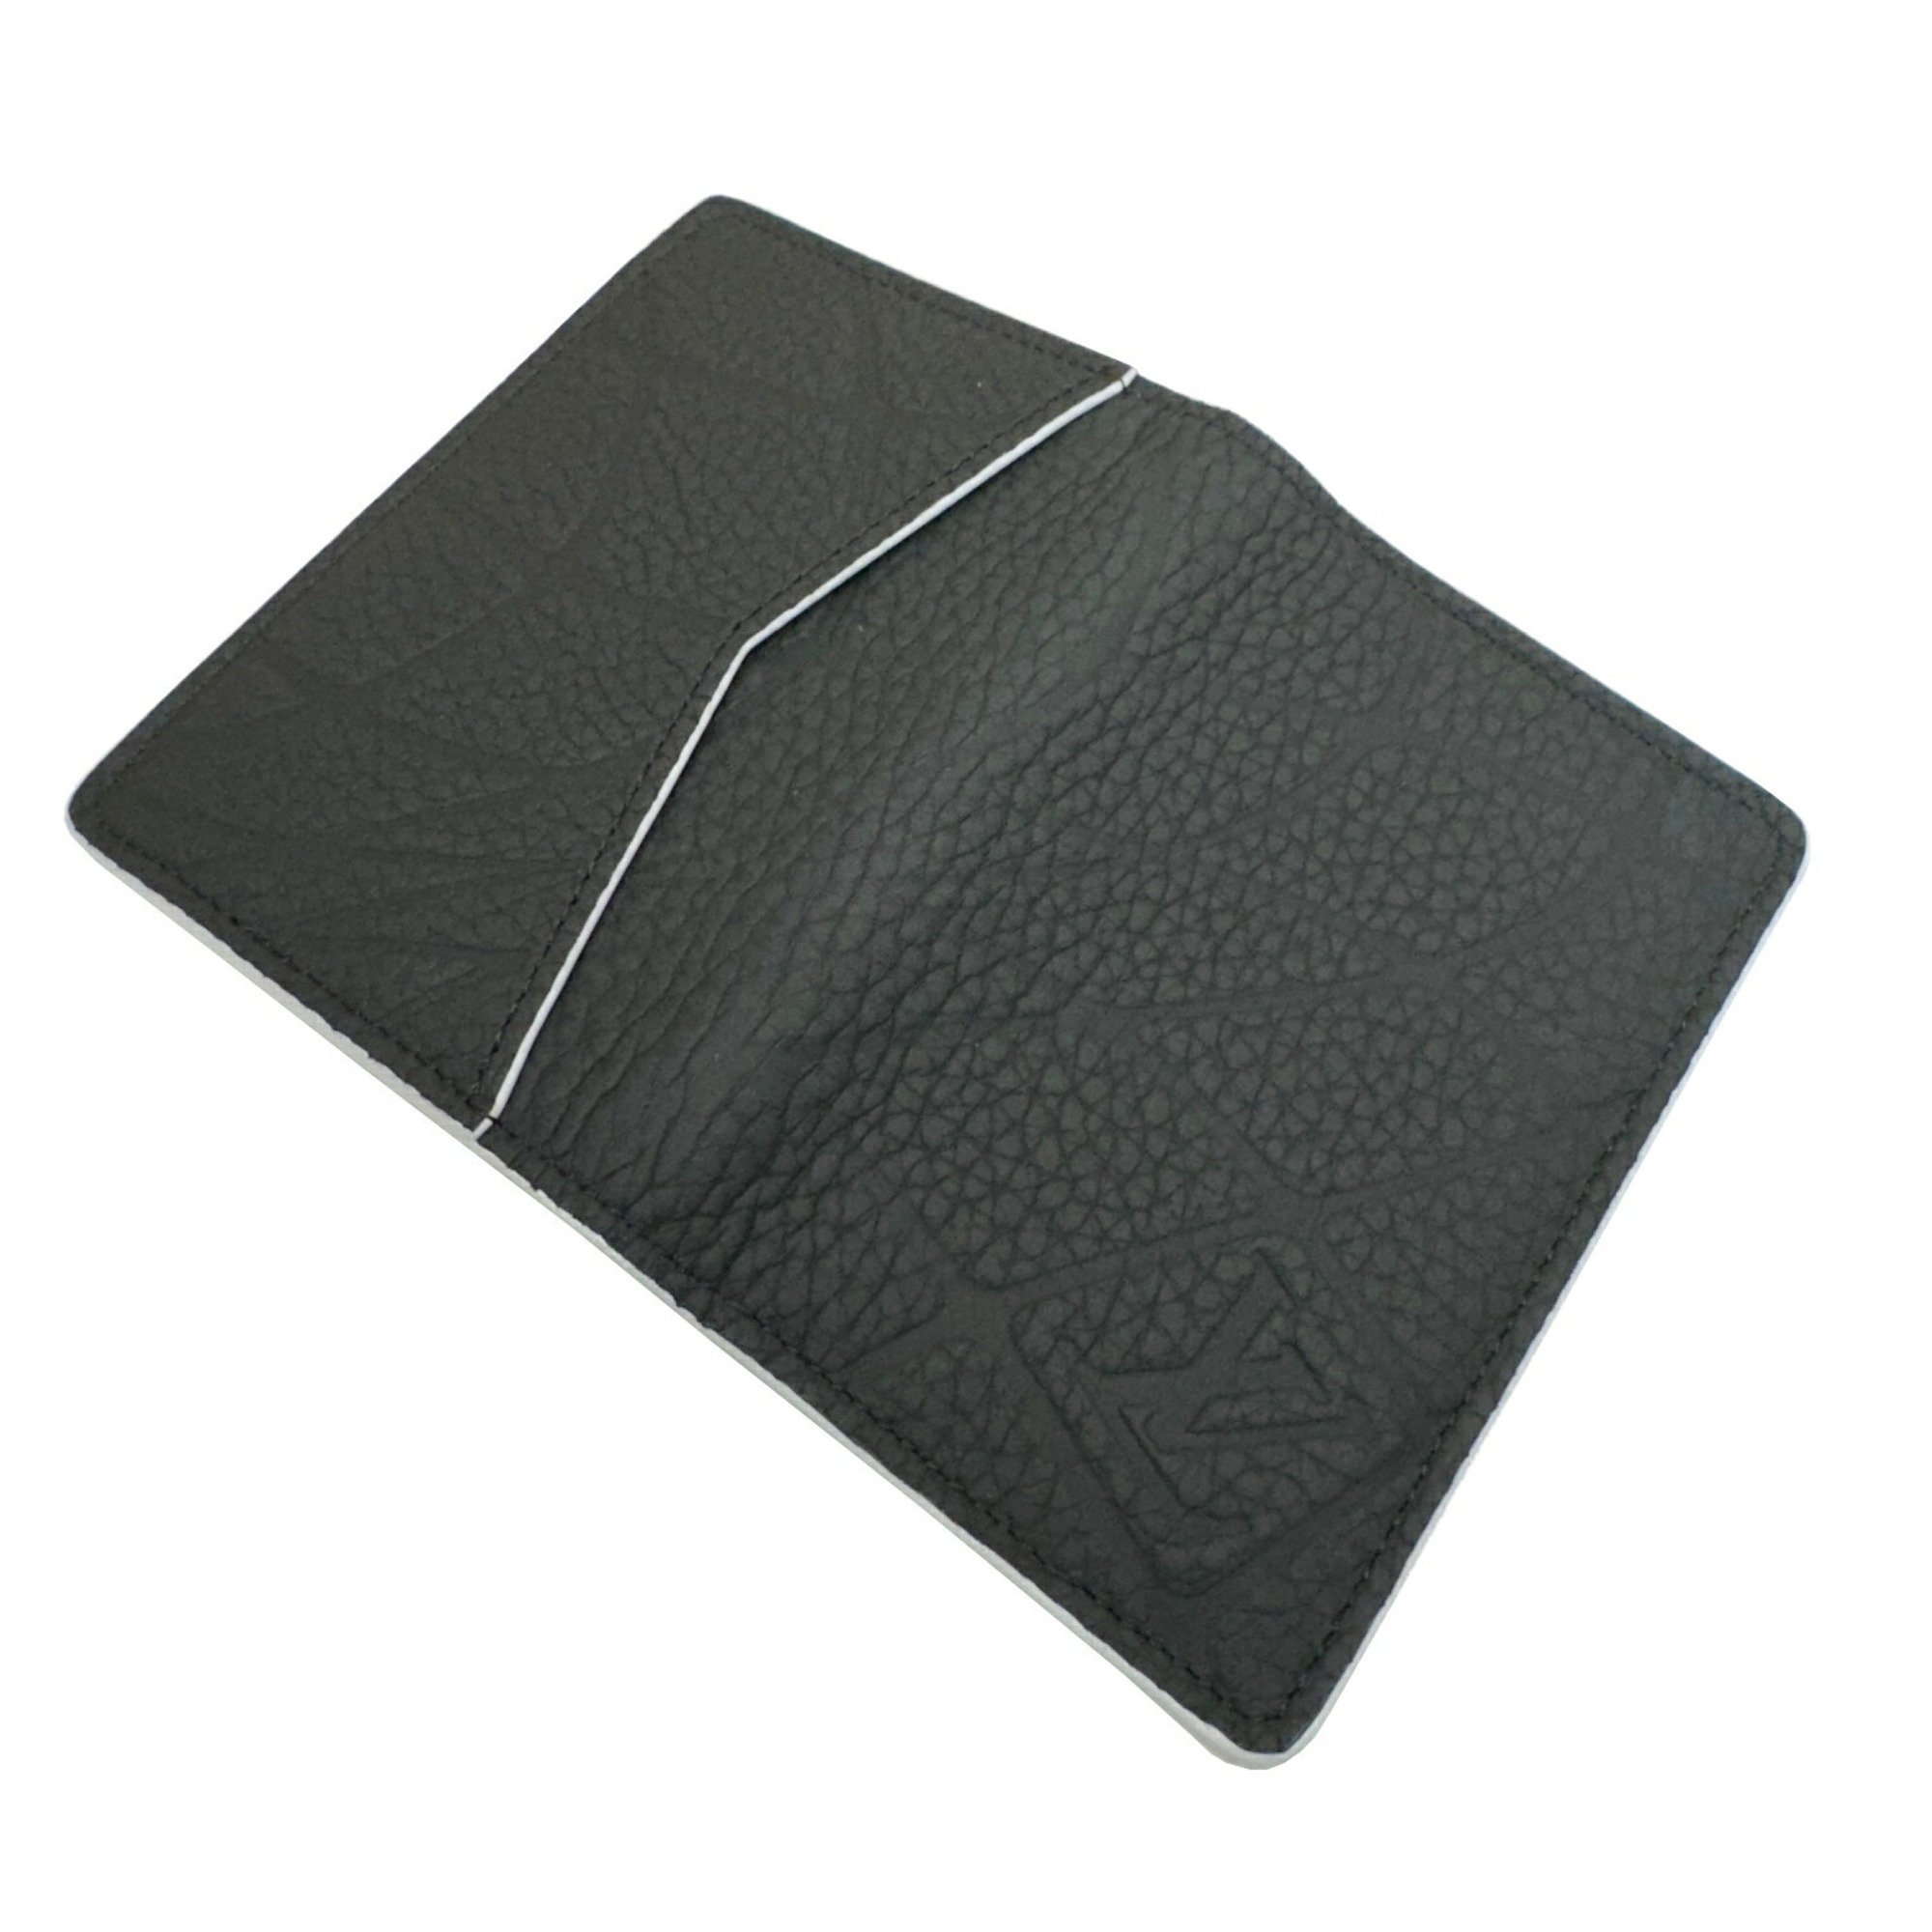 LOUIS VUITTON Louis Vuitton Organizer de Poche 2022 FIFA Collaboration M81732 RFID Taurillon Leather Black White Card Case Business Holder Men's